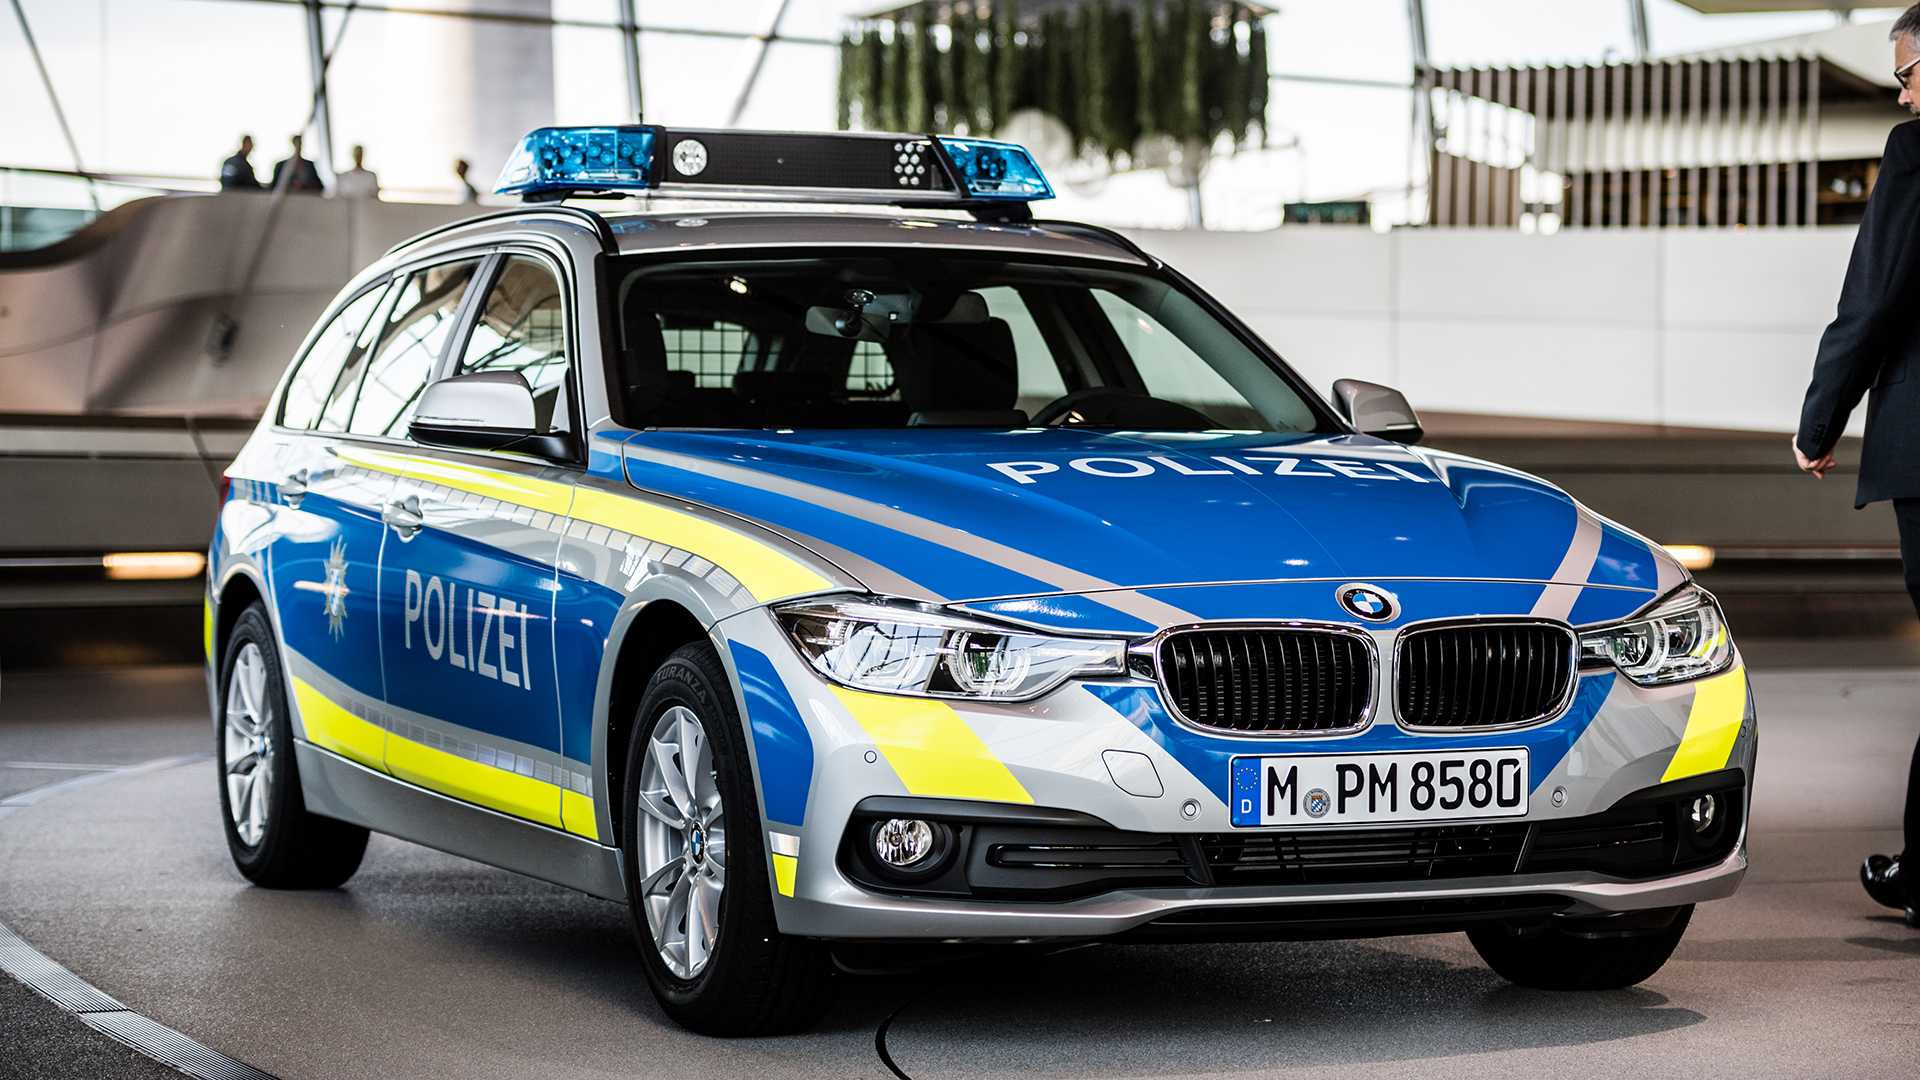 Купить bmw в германии. BMW Polizei. BMW m1 Polizei. Полиция Германии БМВ. BMW 545i Polizei.